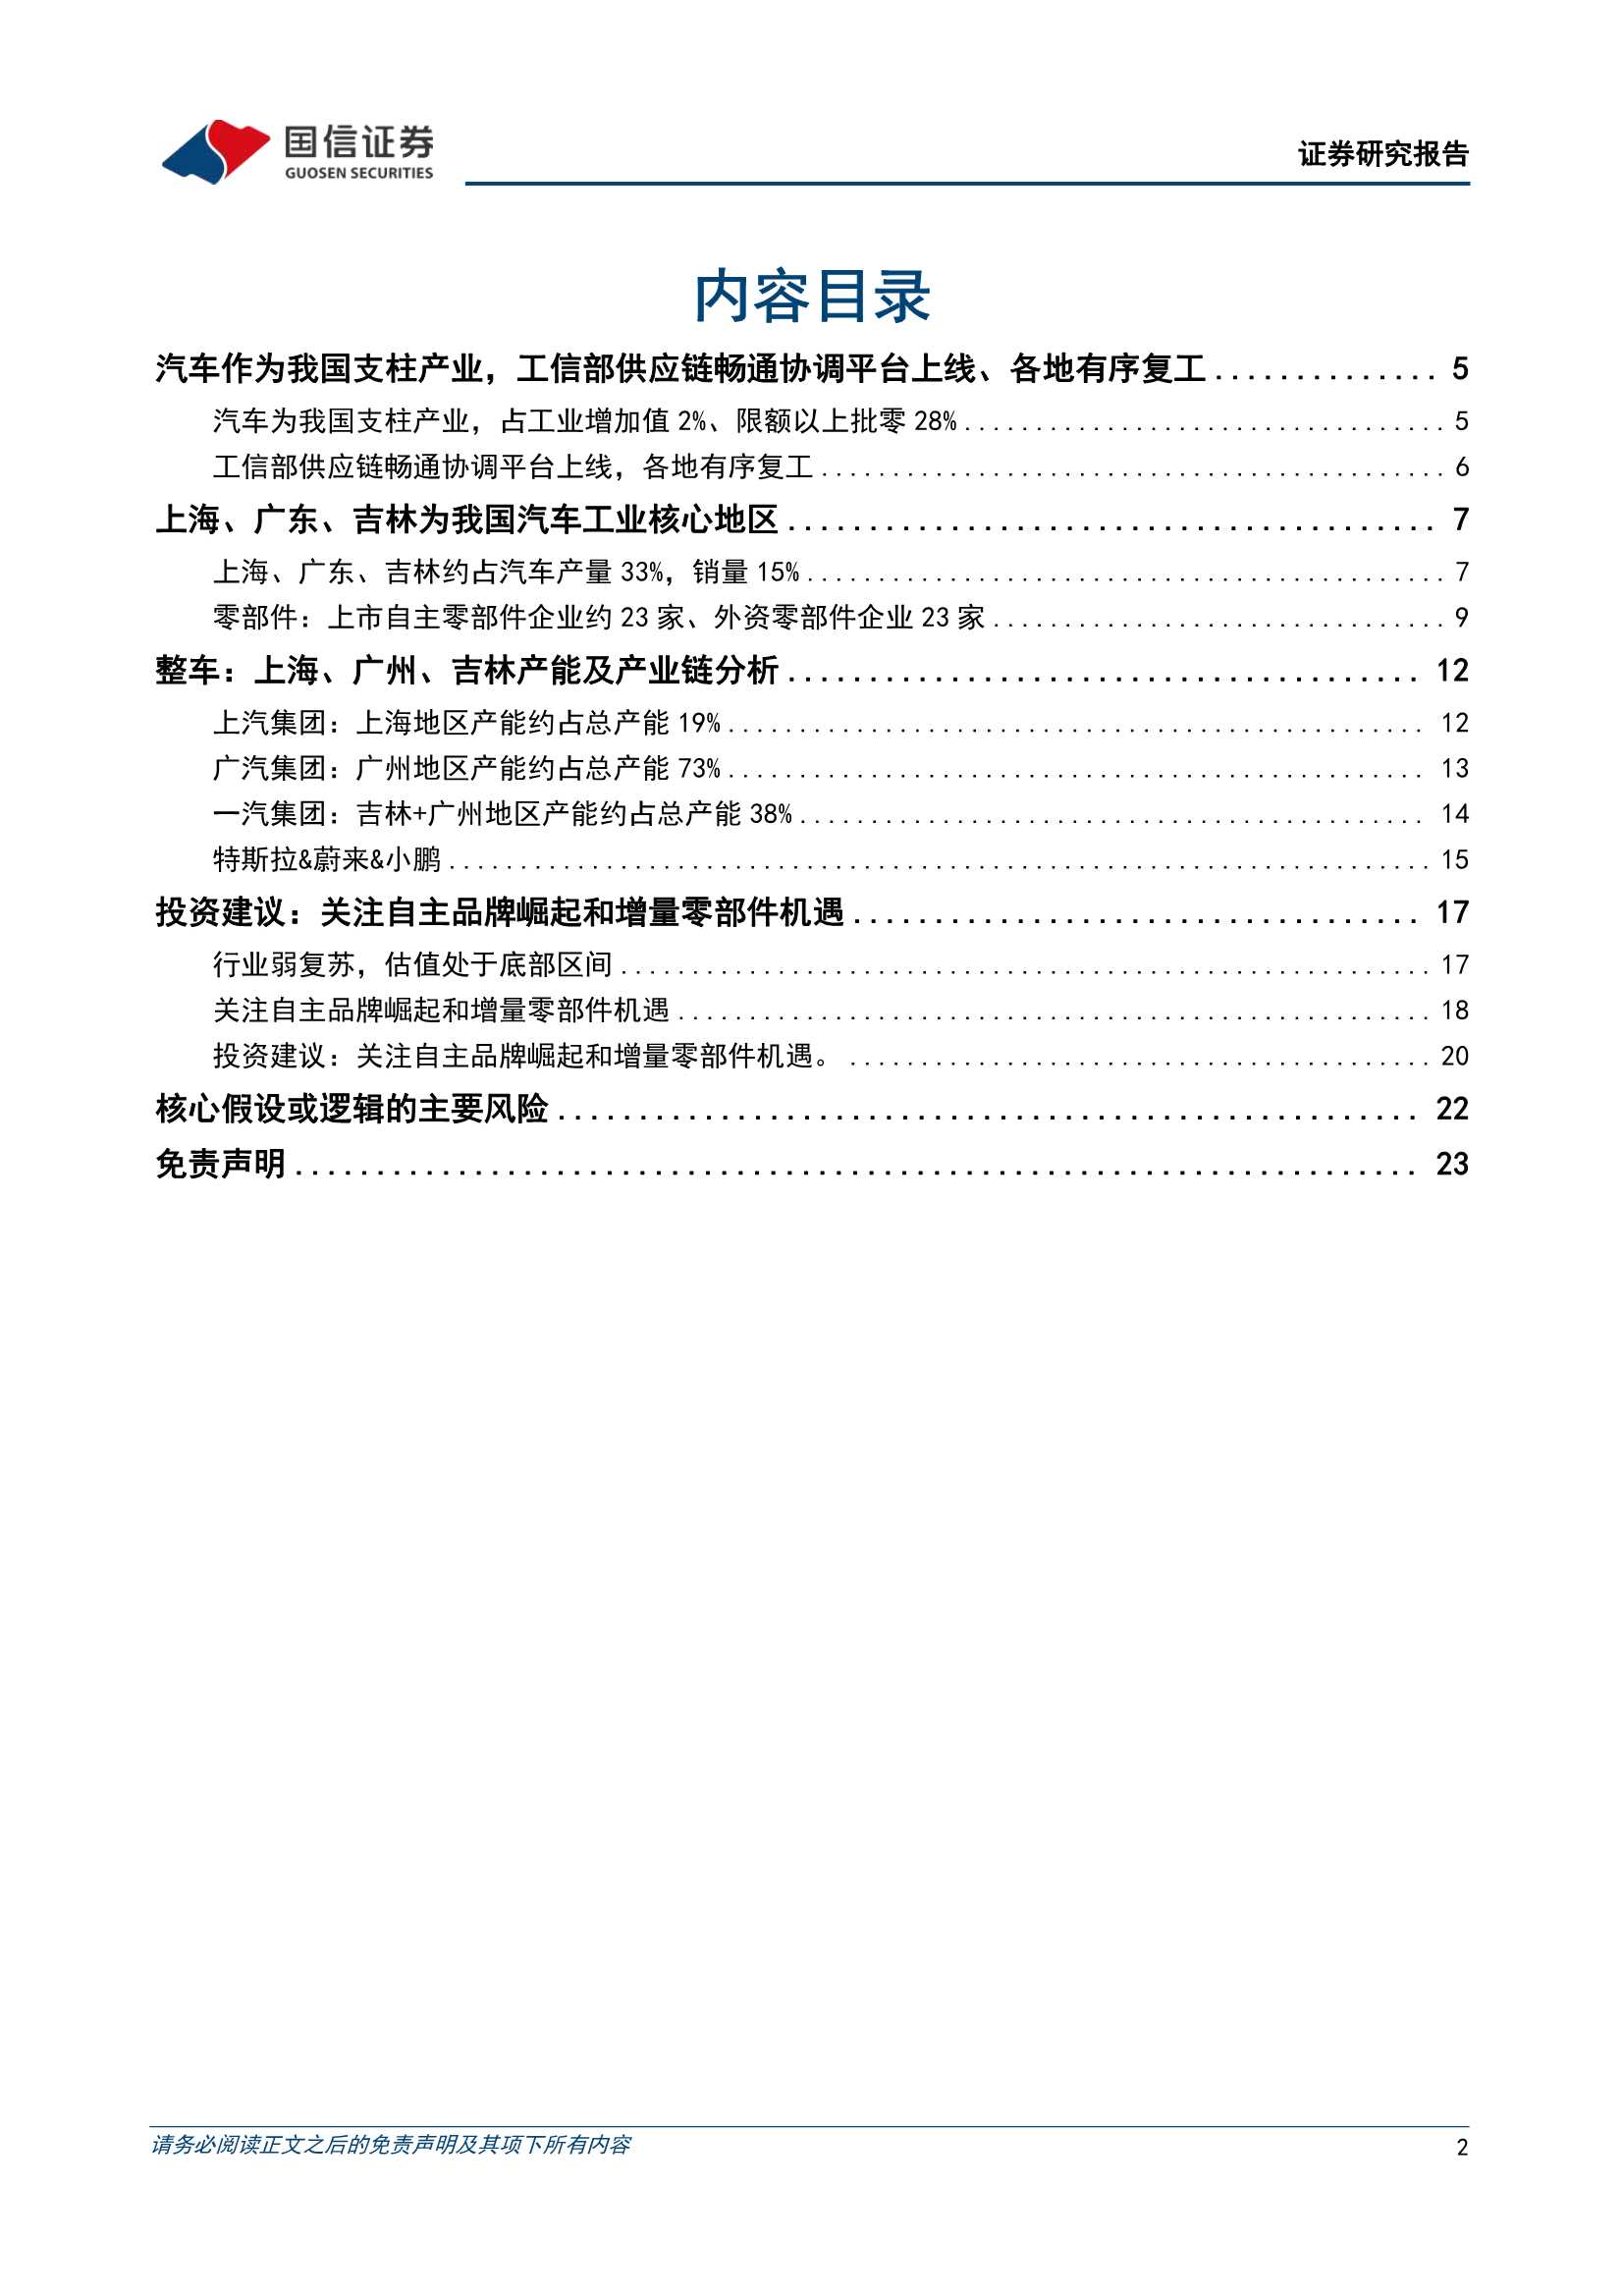 汽车行业产业链近况分析专题：上海、吉林、广东区域汽车供应链梳理-20220415-国信证券-24页